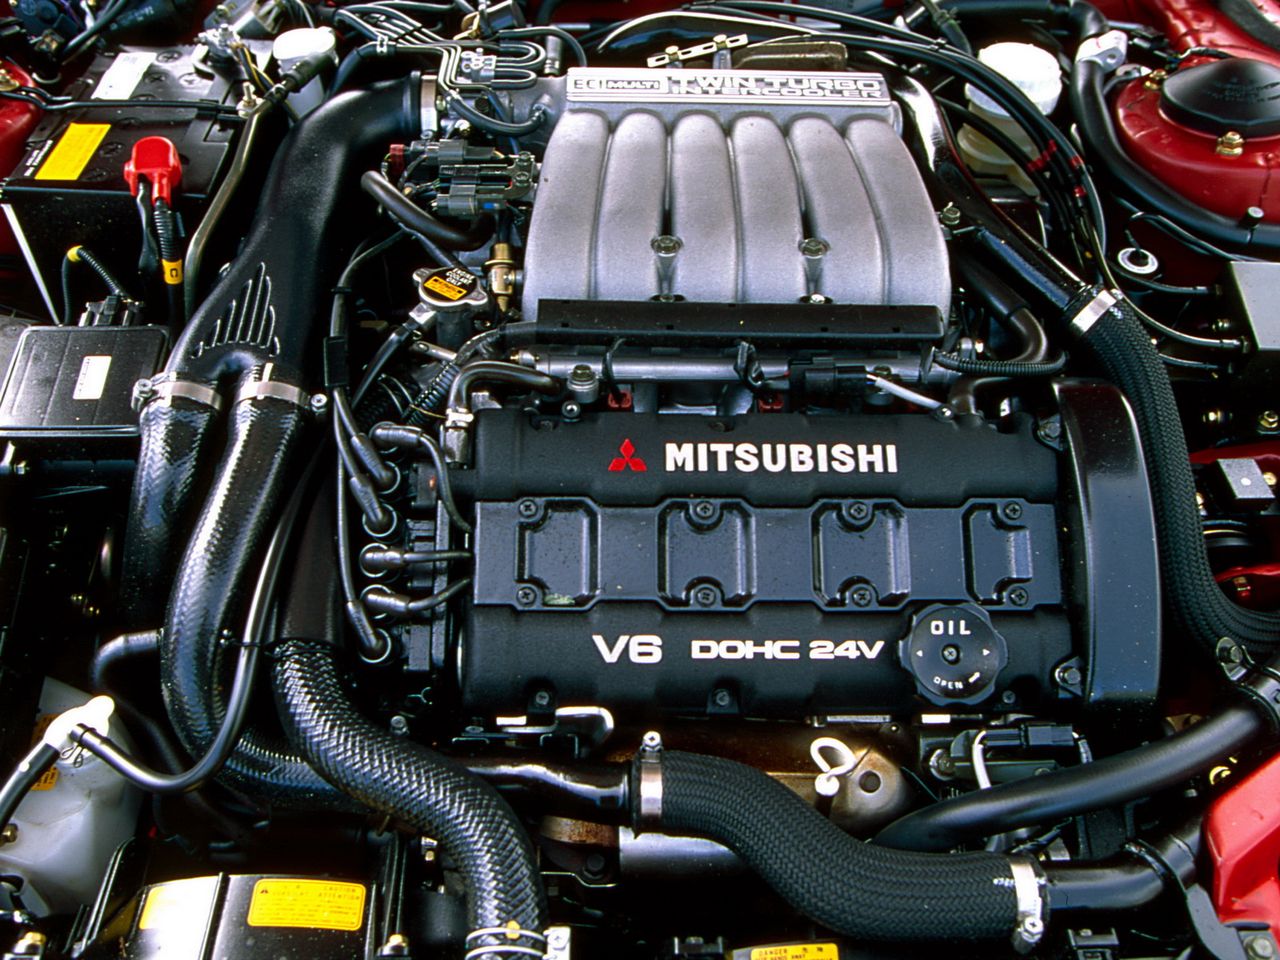 Jednostka V6 o pojemności 3,0 litra w topowej odmianie miała system twin turbo i generowała 280-320 KM. Niestety problemem stanowiła jego masa i umieszczenie poprzeczne zbyt blisko przodu, co nie pomagało w uzyskiwaniu doskonałych czasów okrążeń na torach wyścigowych.